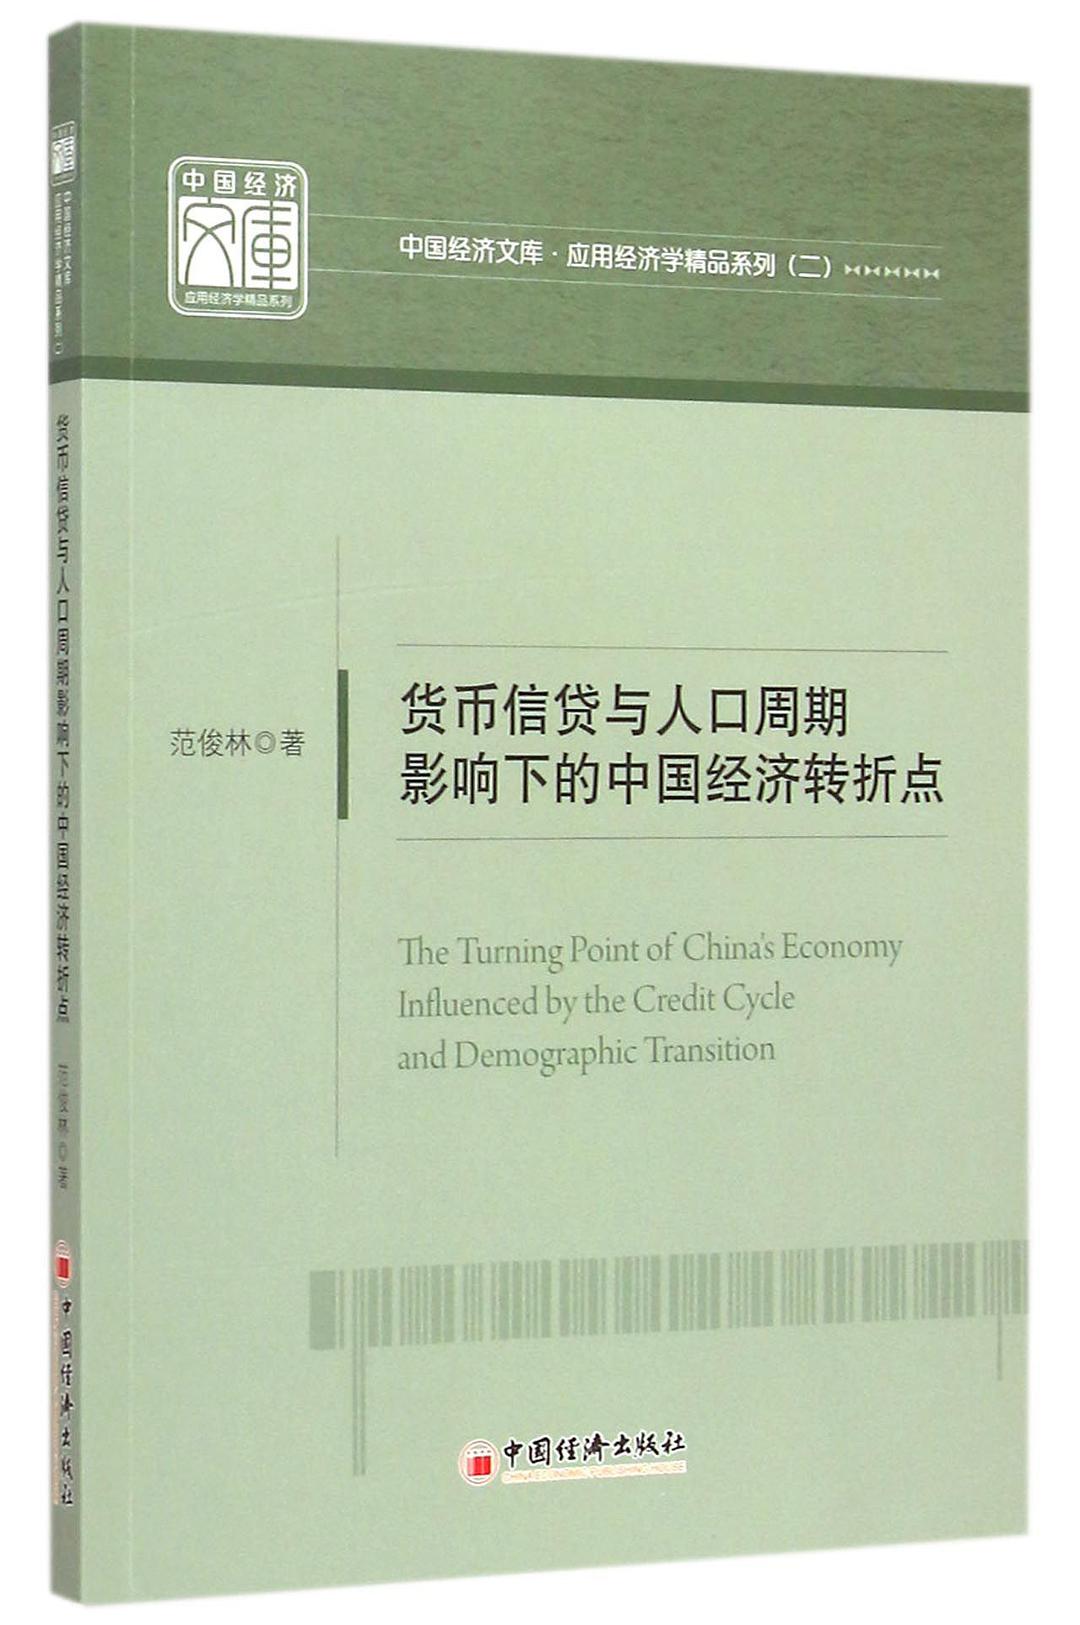 货币信贷与人口周期影响下的中国经济转折点